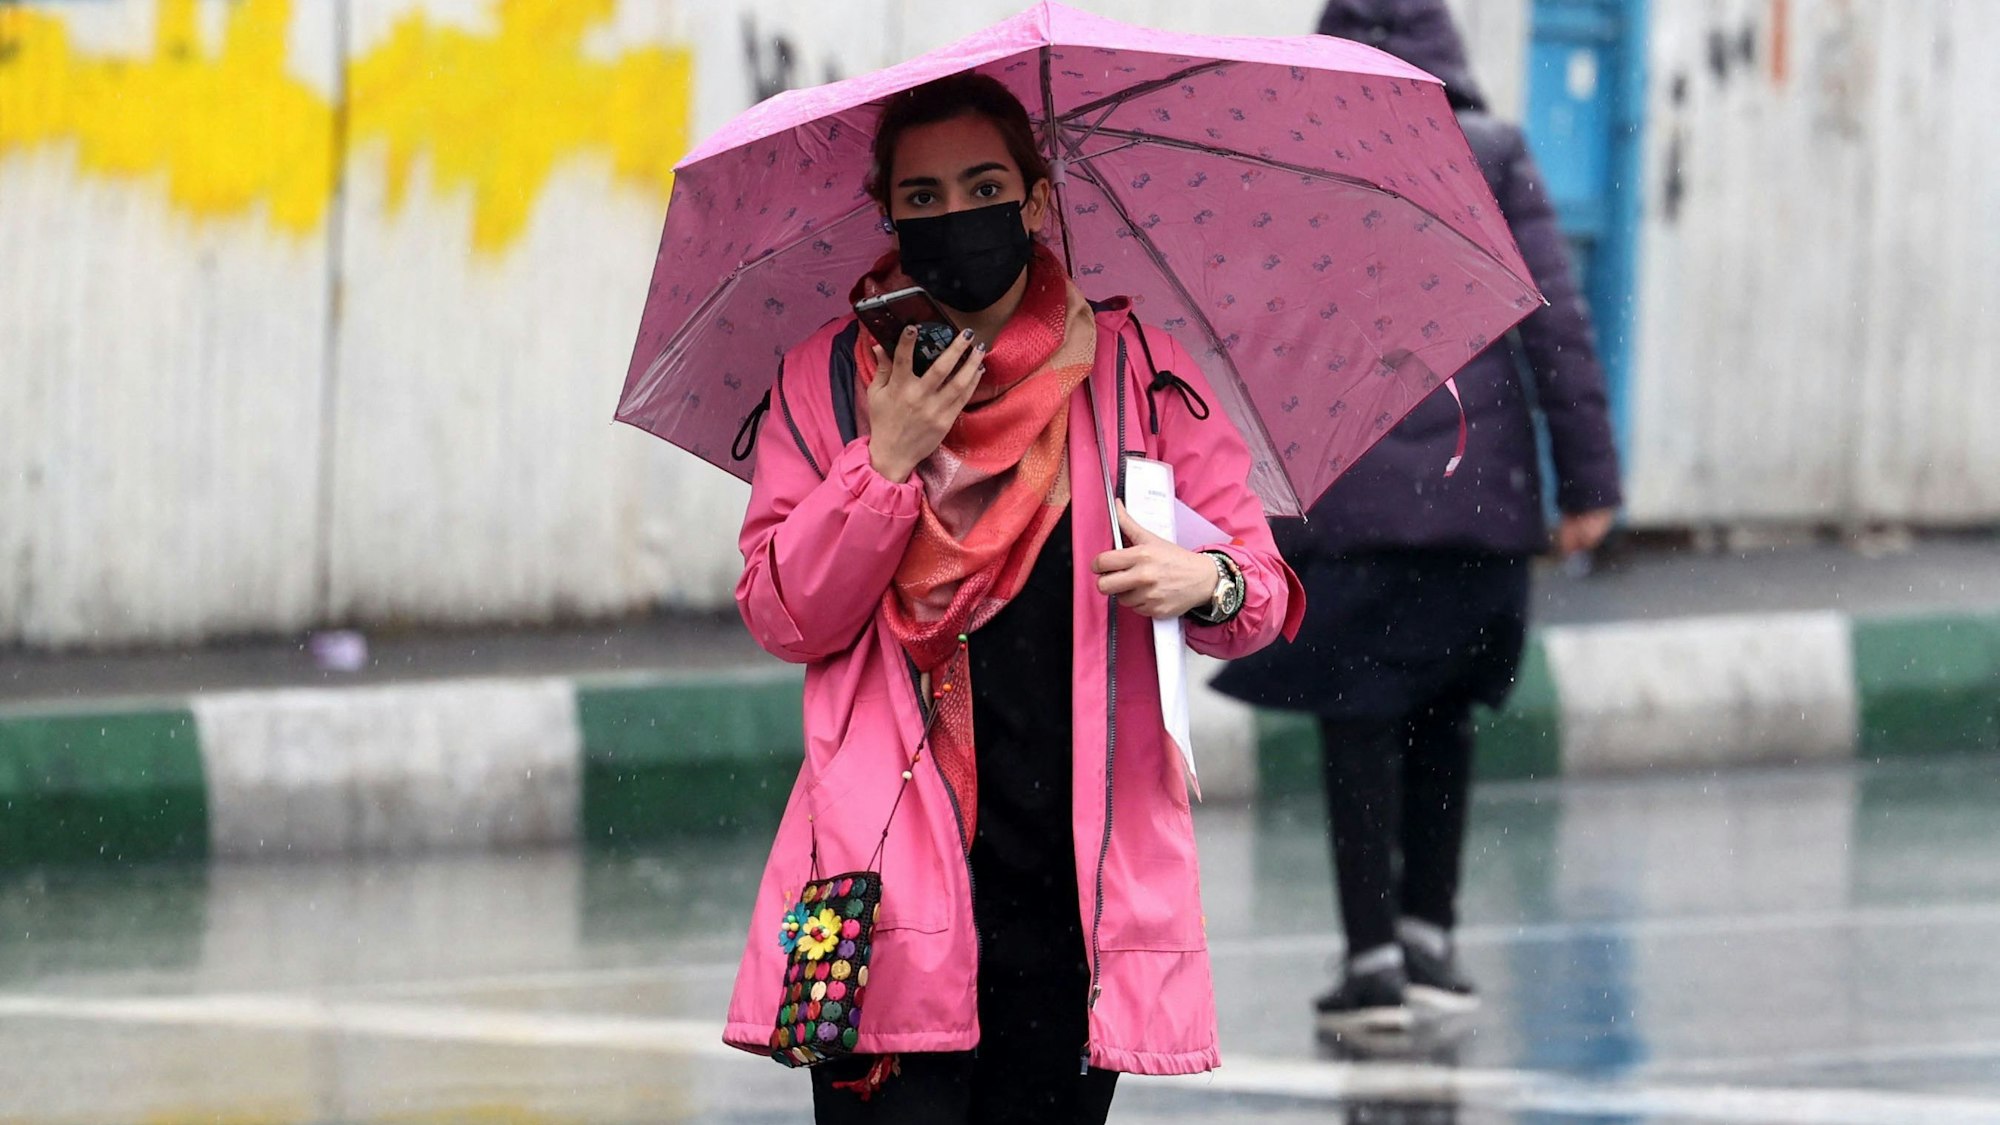 Eine junge iranische Frau läuft ohne Kopftuch an einem Regentag über die Straßen Teherans. Sie trägt einen Mund-Nasen-Schutz und hat einen rosafarbenen Regenschirm dabei.